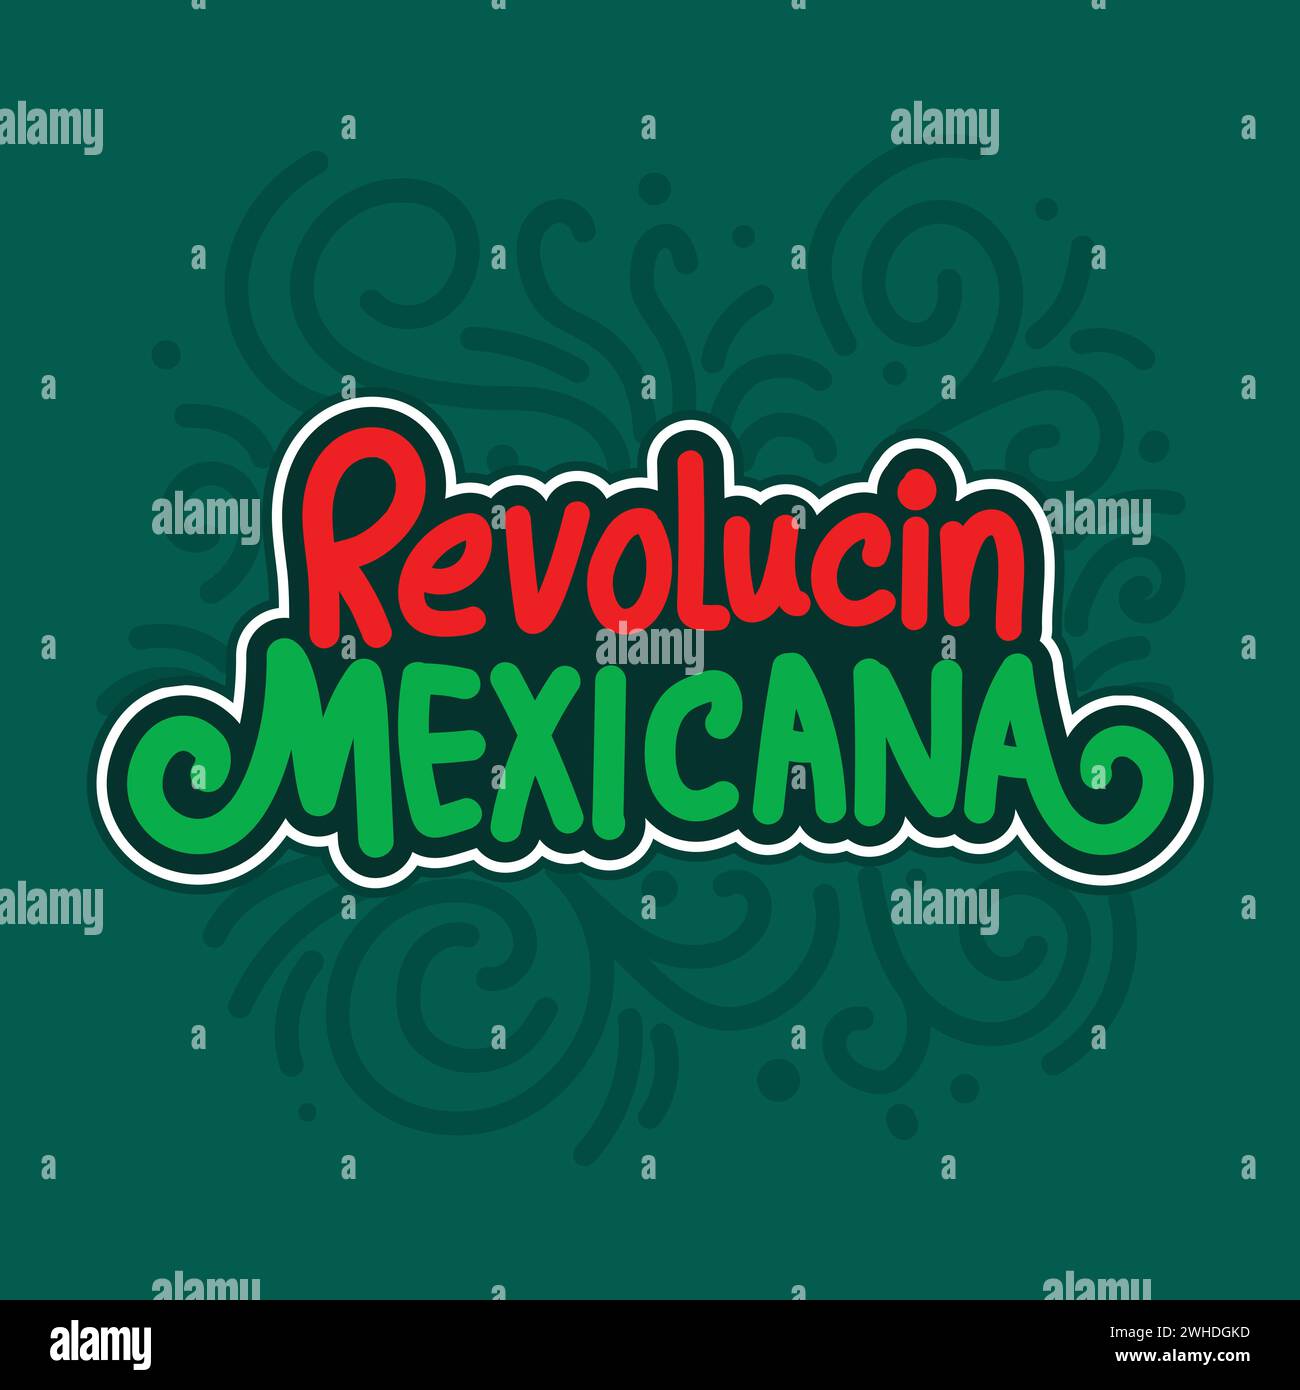 Modello per banner Revolucion Mexicana con tipogri per celebrare le festività messicane tradizionali il 20 novembre. Rivoluzione messicana testo spagnolo, vettore Illustrazione Vettoriale